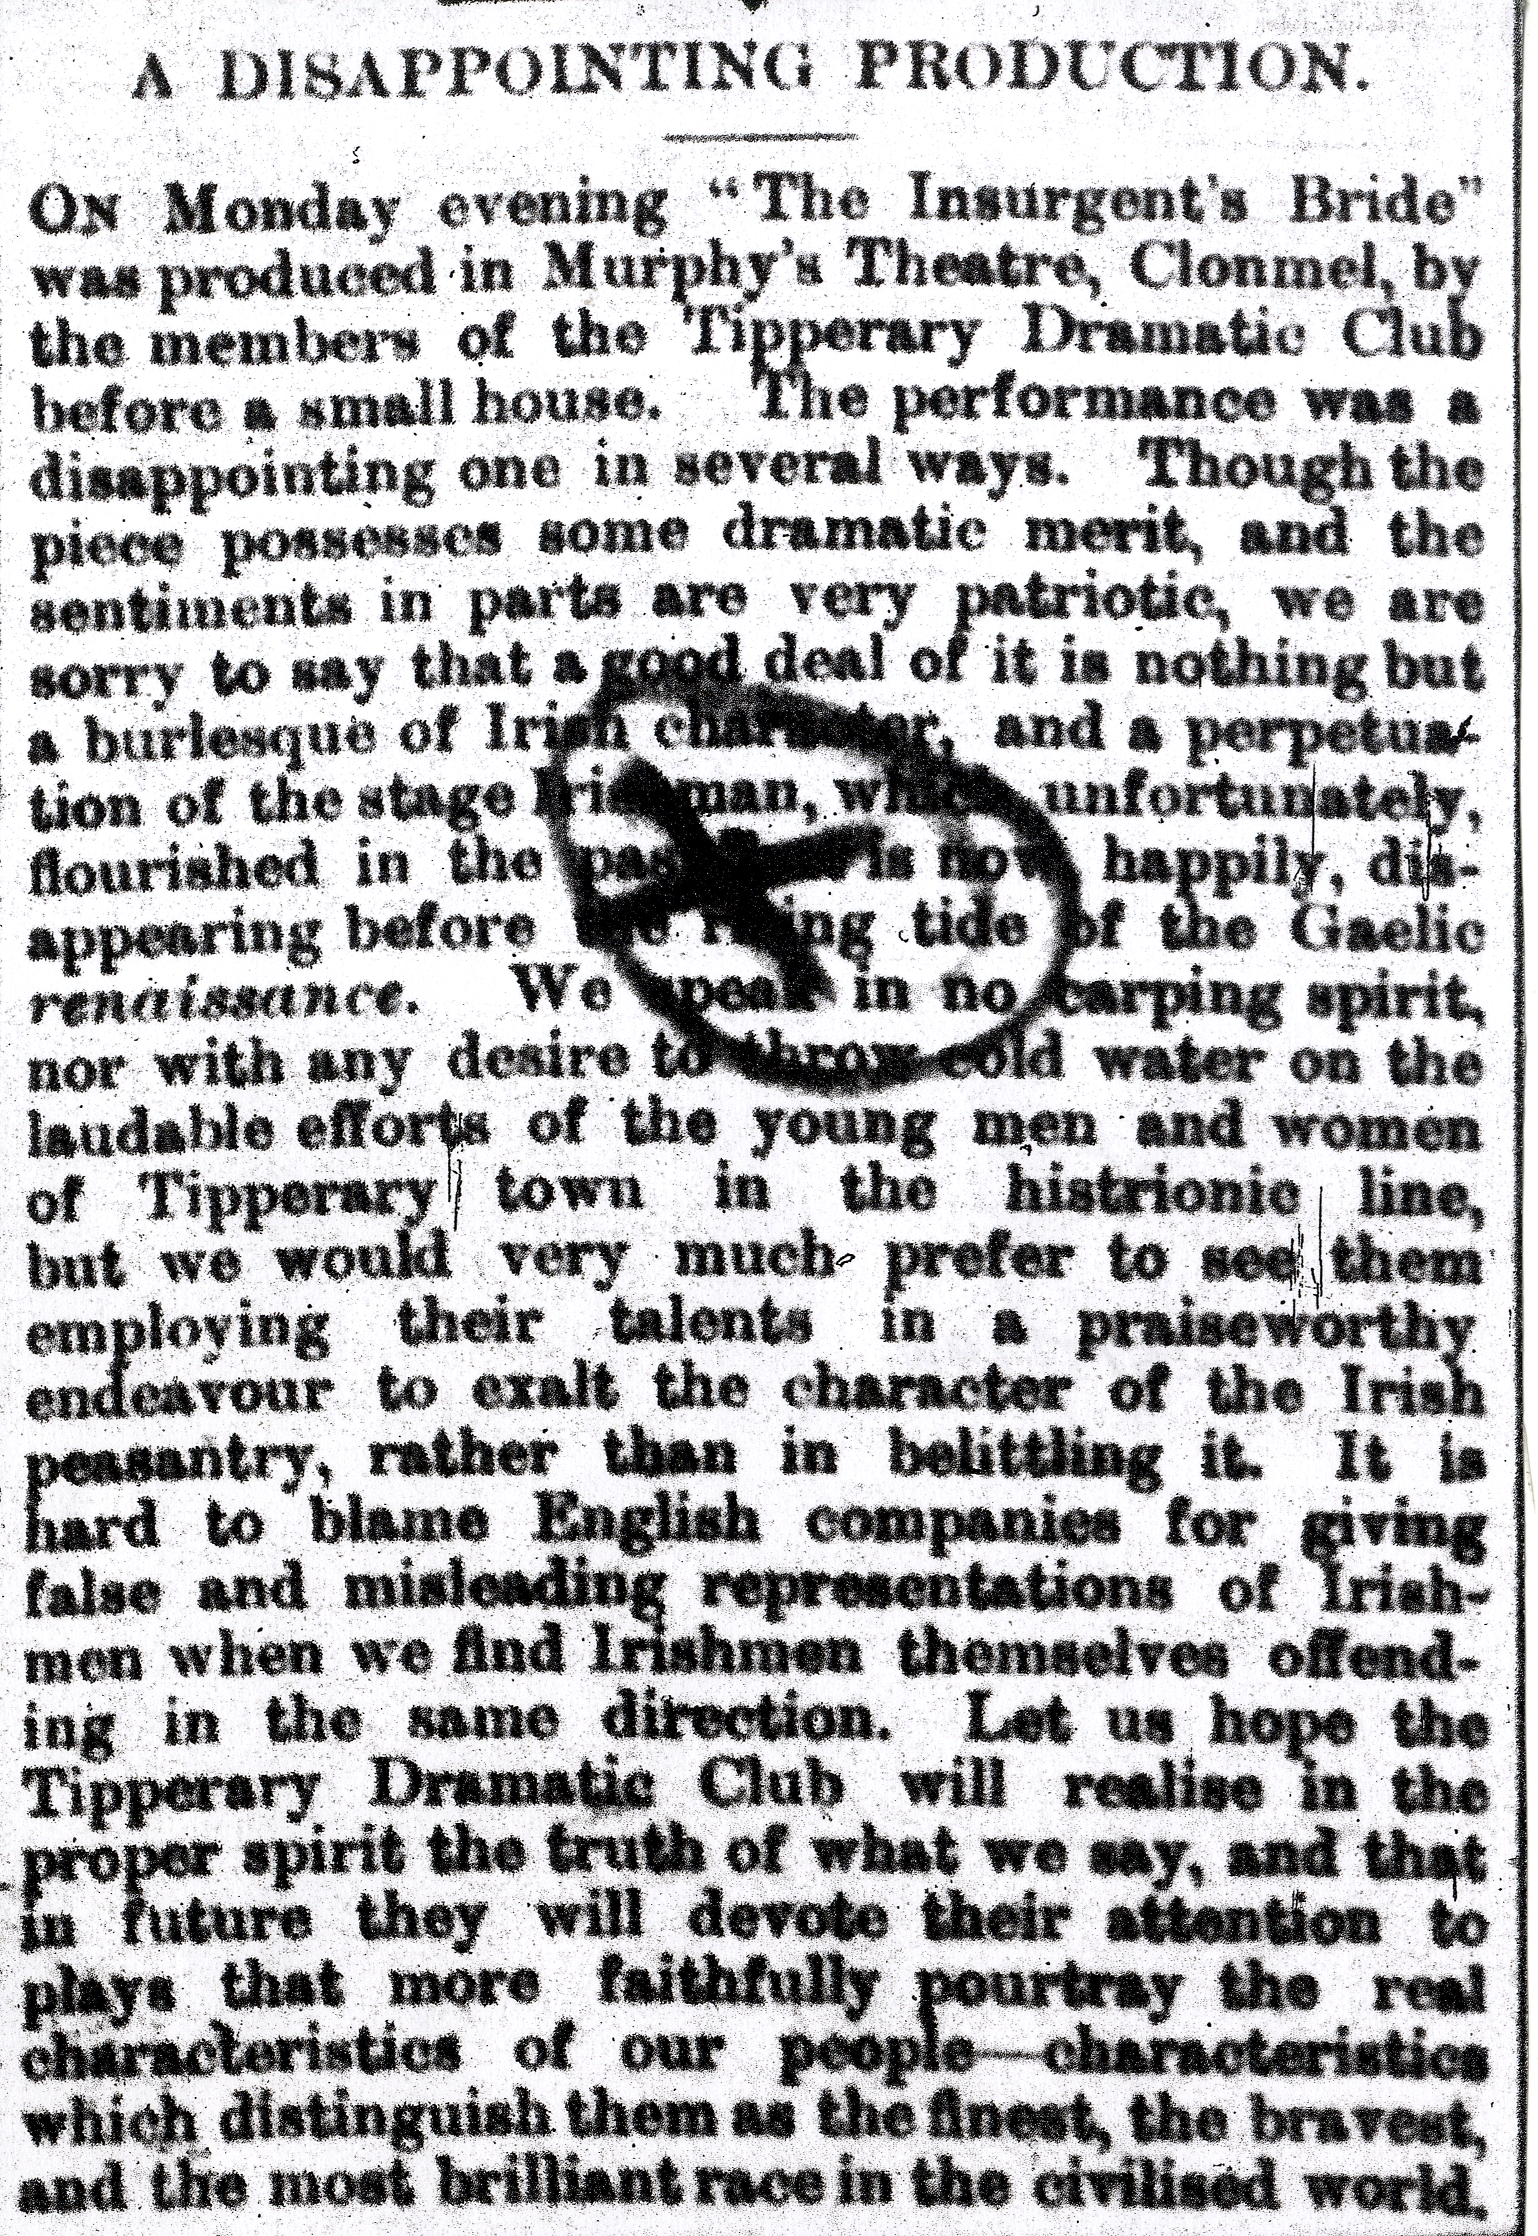 Nationalist 25 May 1904 Drama